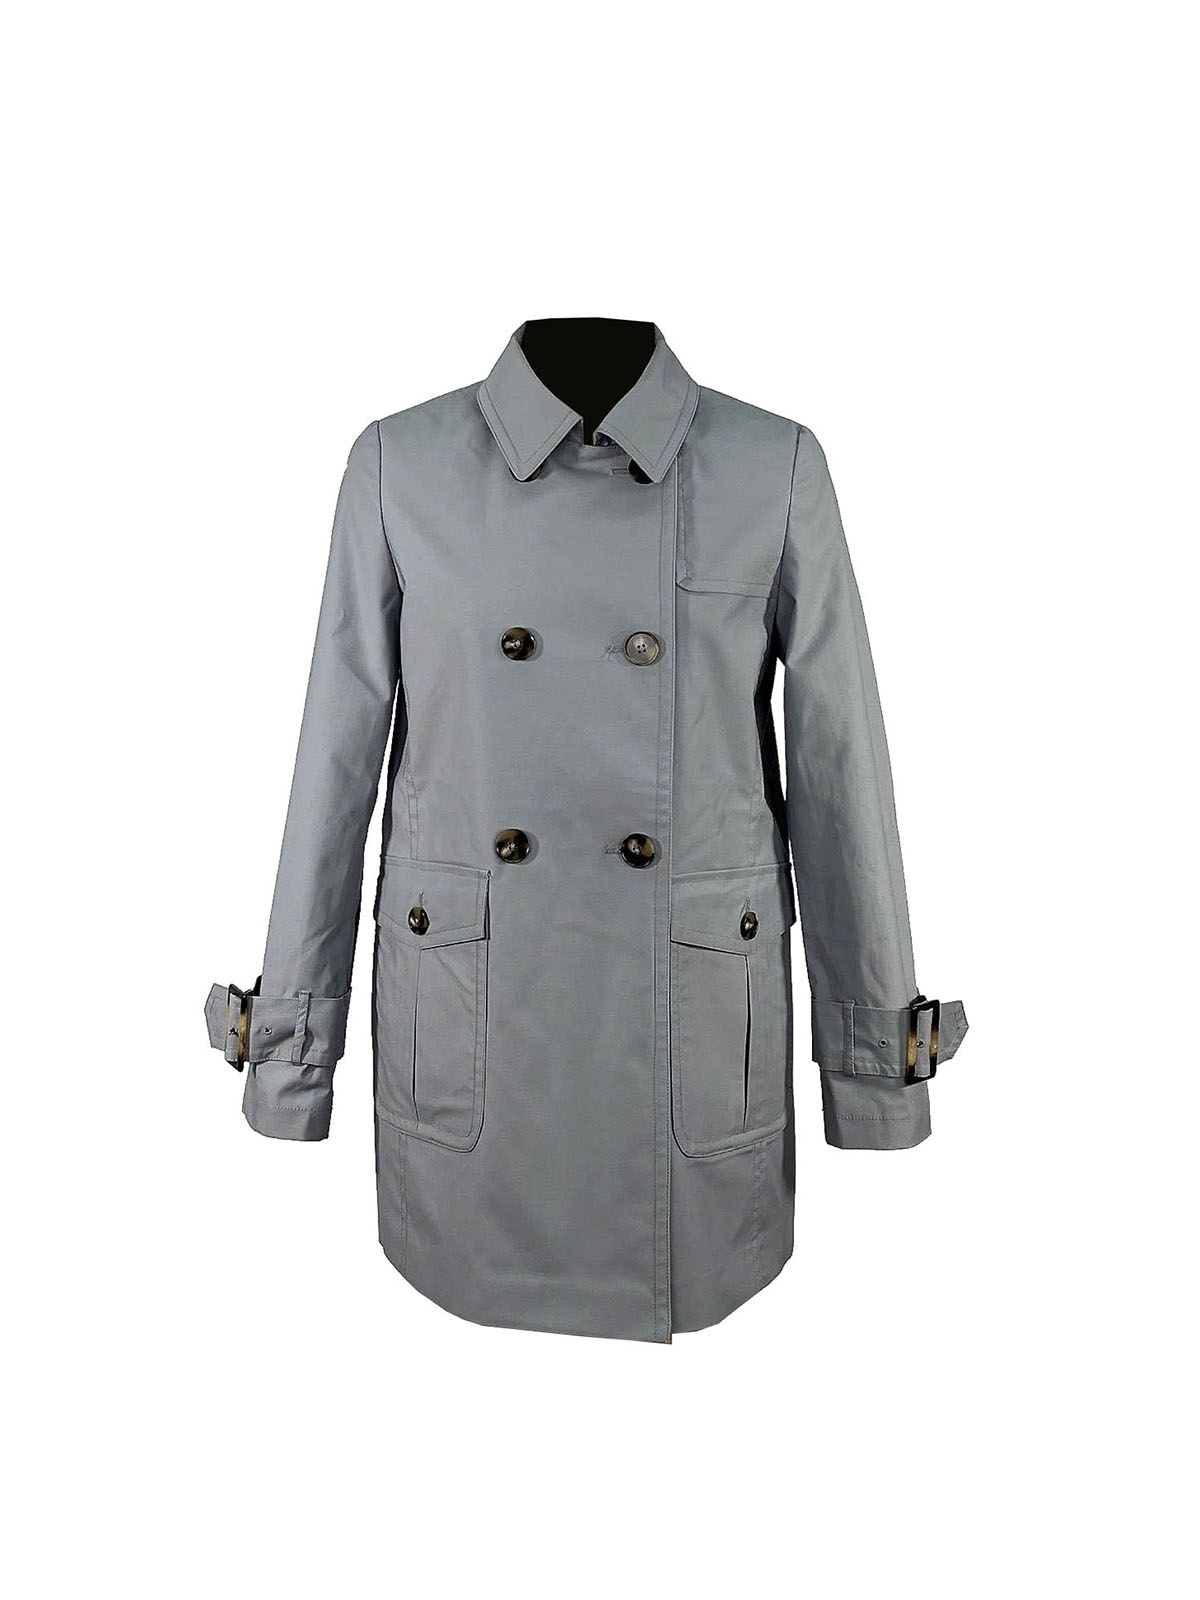 4.coat (1)